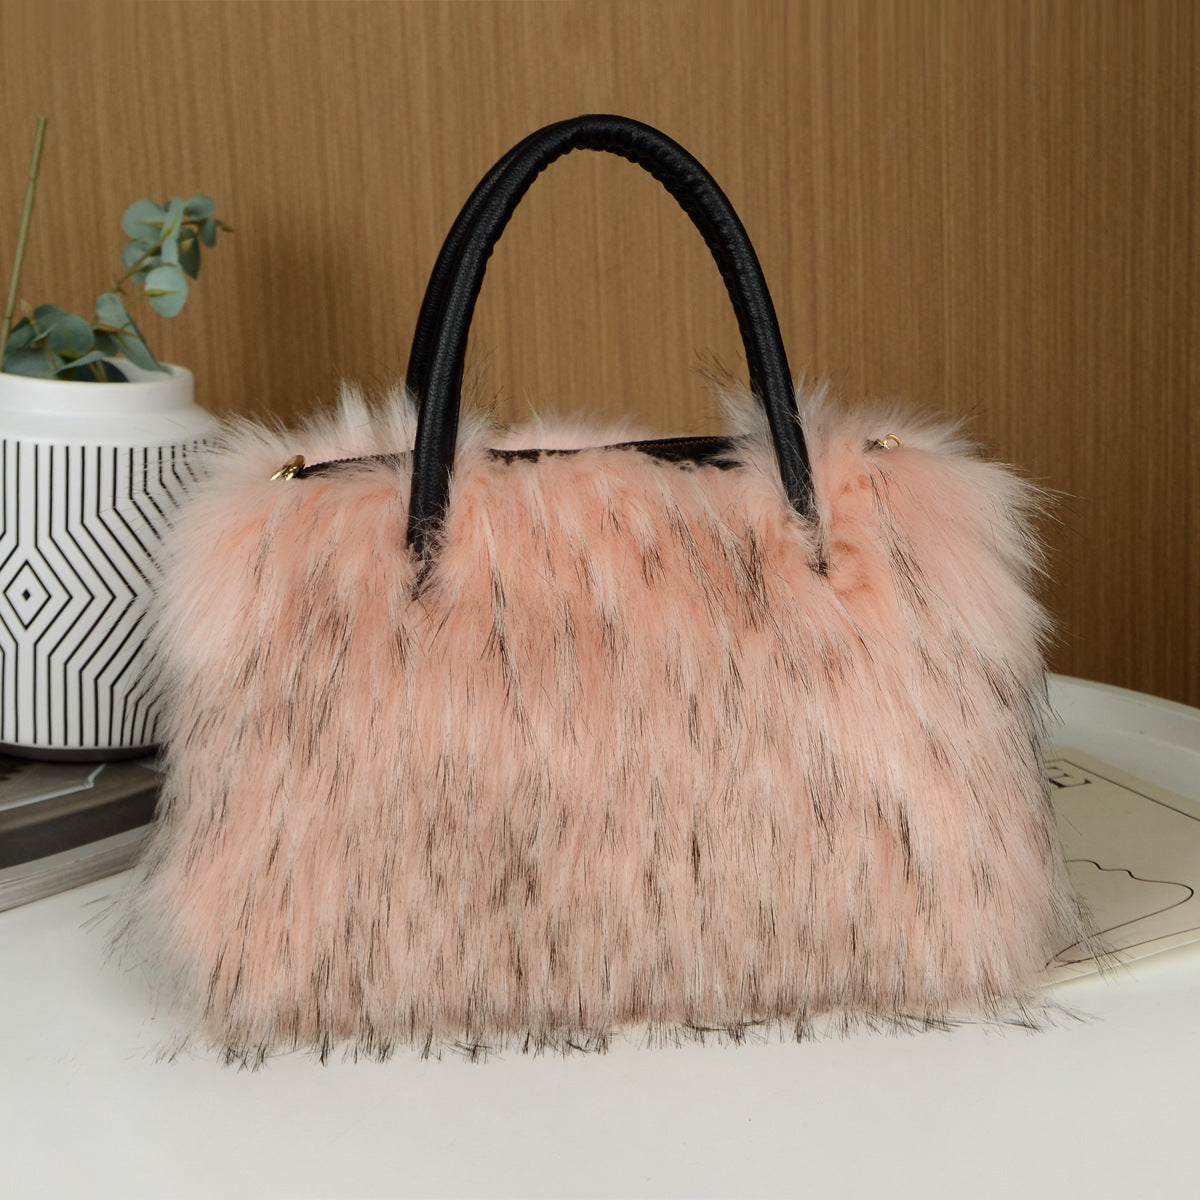 Fluffy Faux Fur Handbag, Small Handle Bag, Furry Bag Fuzzy Luxury Clutch